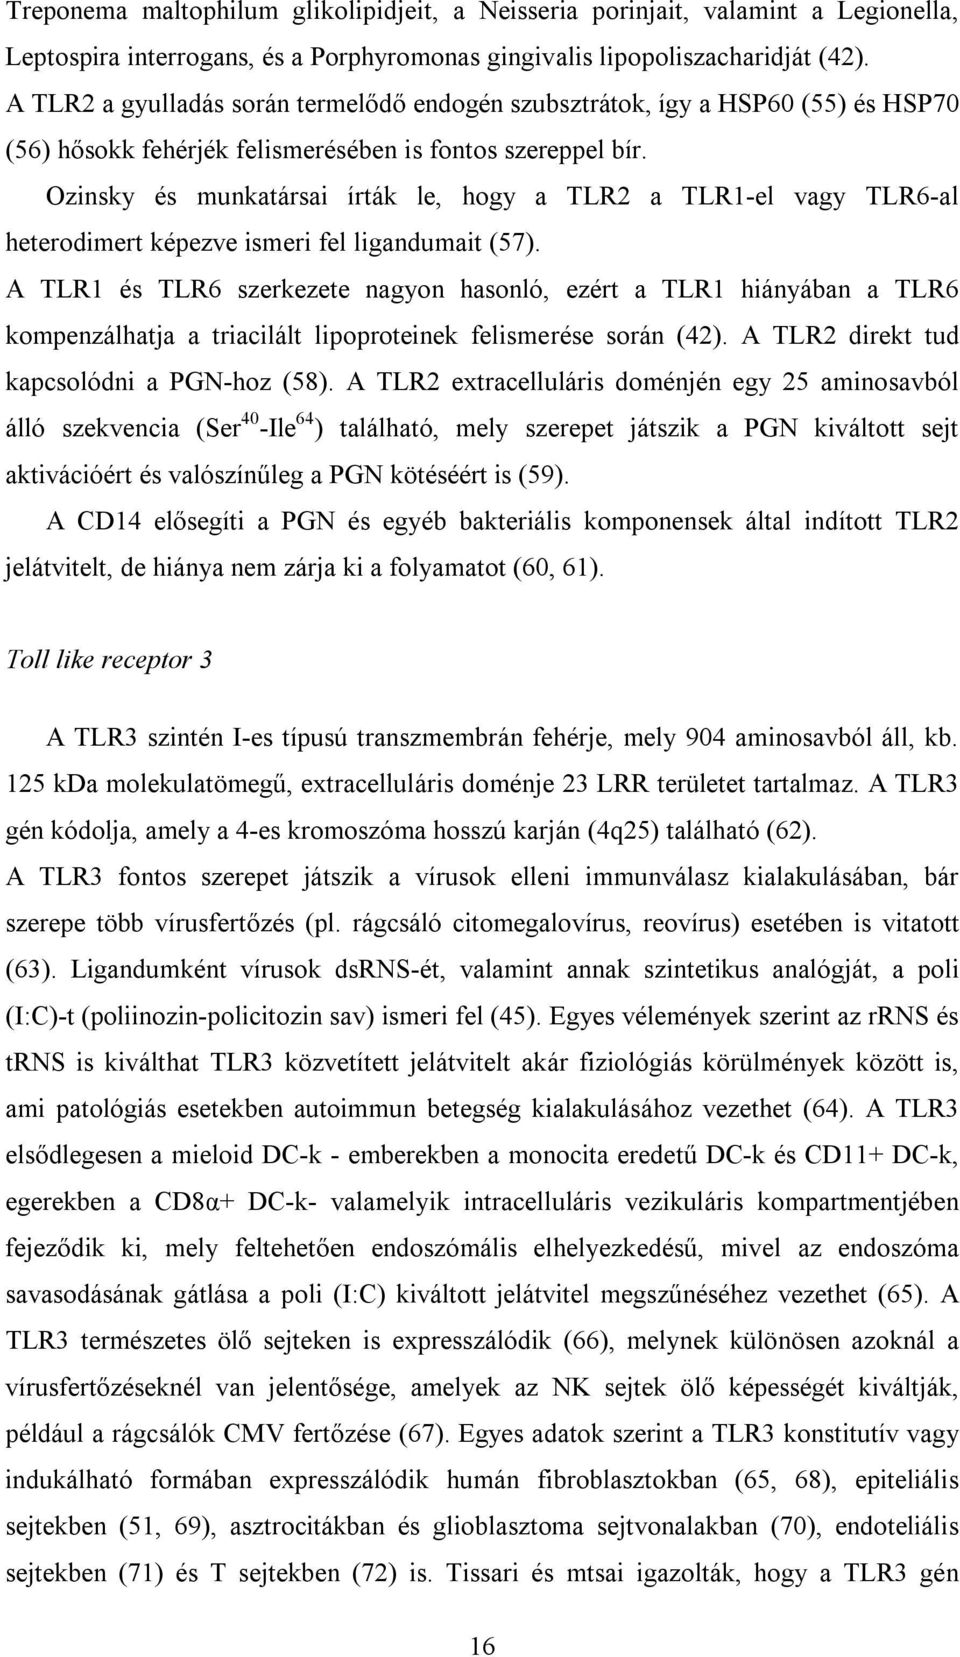 Ozinsky és munkatársai írták le, hogy a TLR2 a TLR1-el vagy TLR6-al heterodimert képezve ismeri fel ligandumait (57).